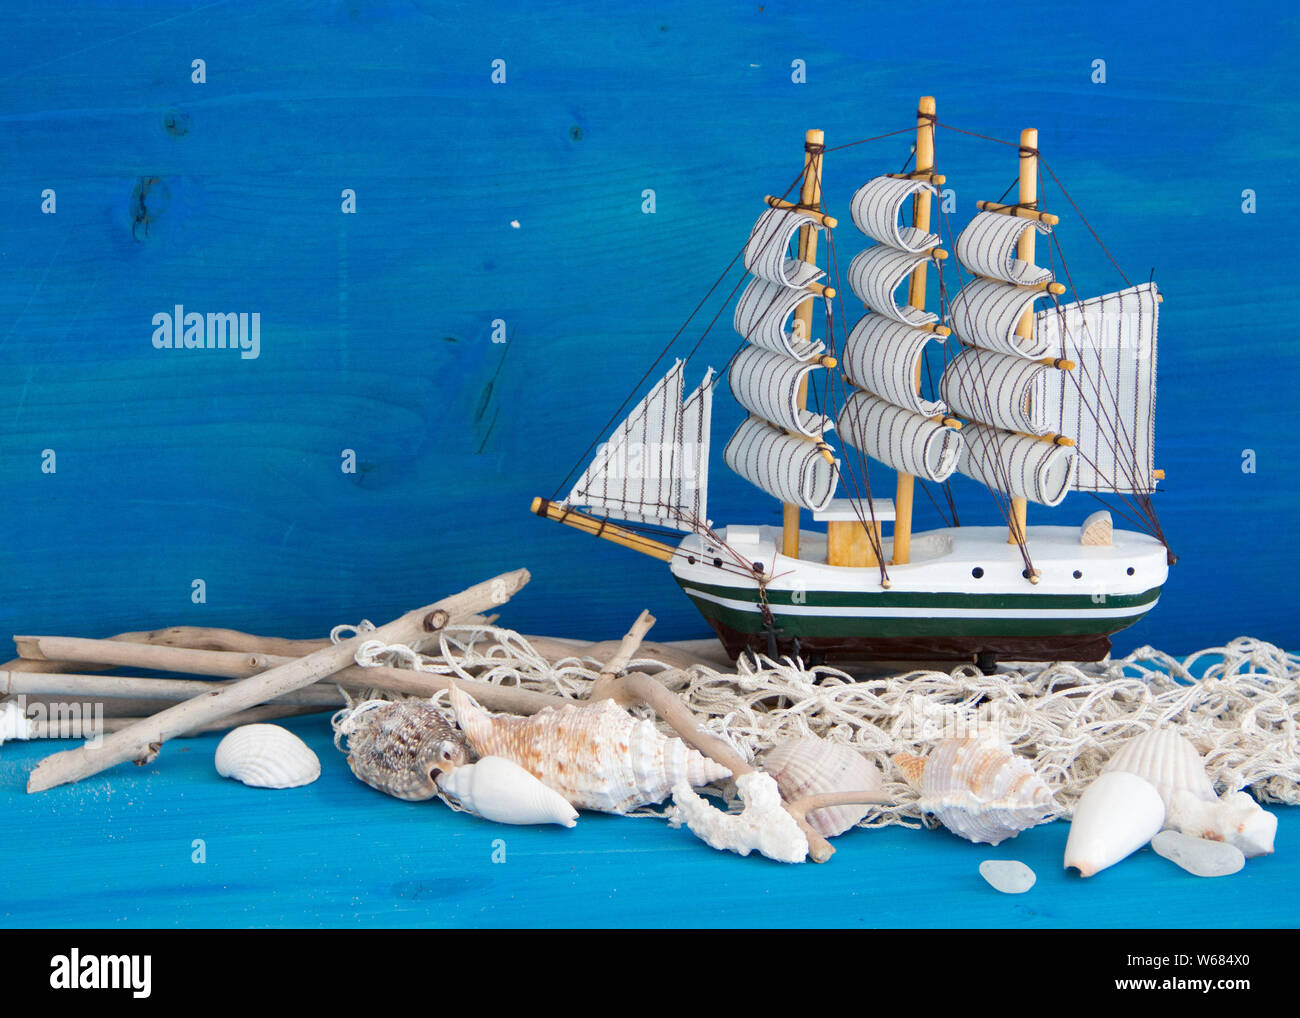 Barche a vela giocattolo, weathered legno e conchiglie in legno di colore blu Foto Stock